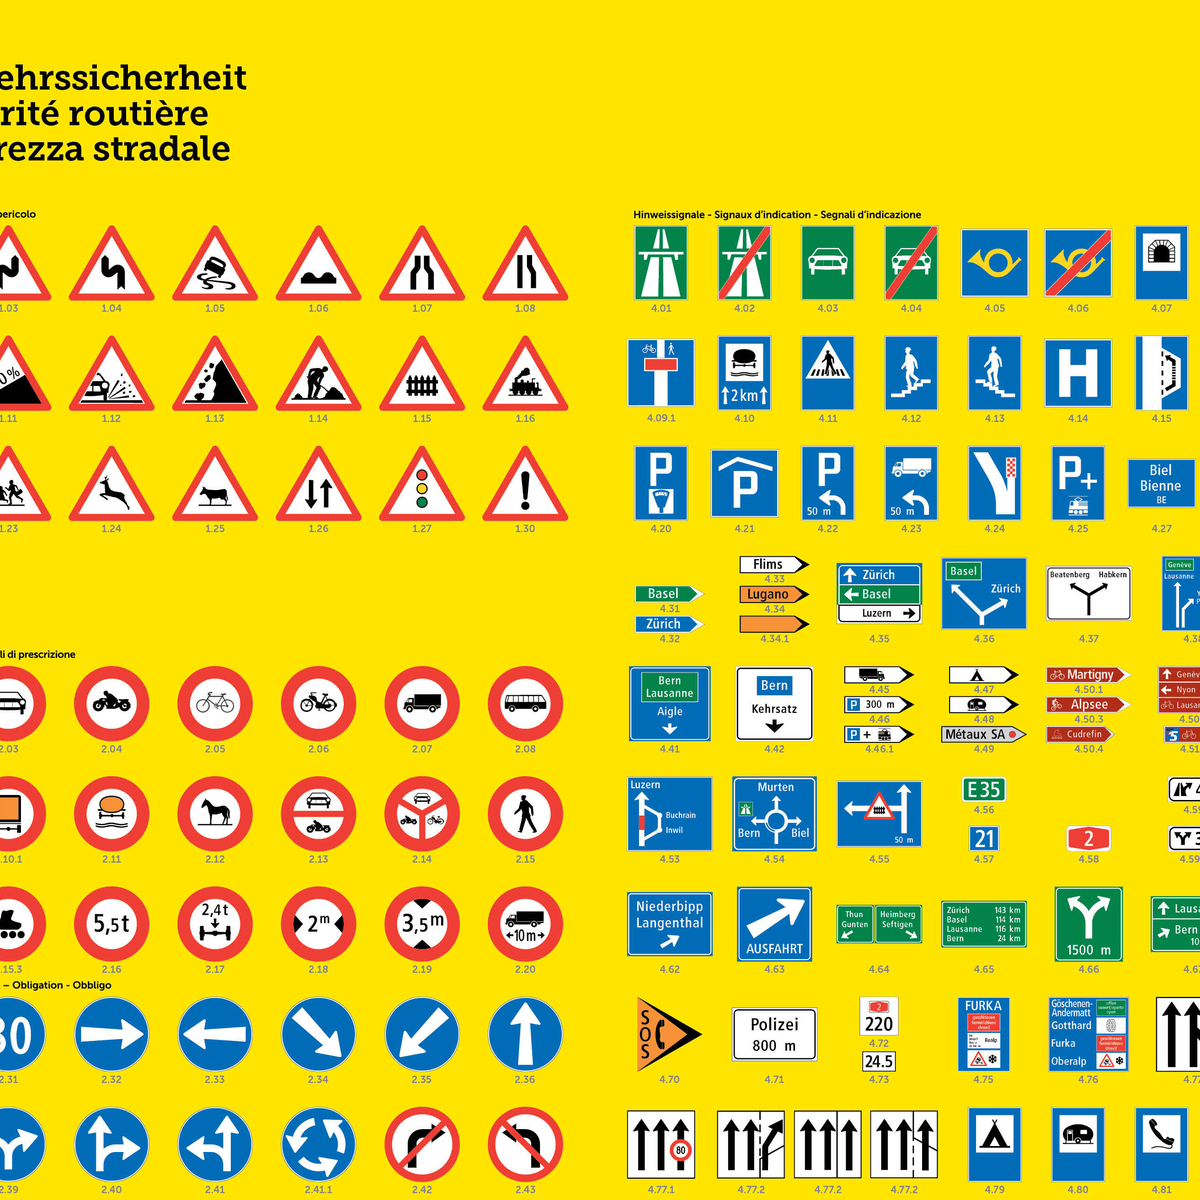 panneaux routiers suisse anti aging)